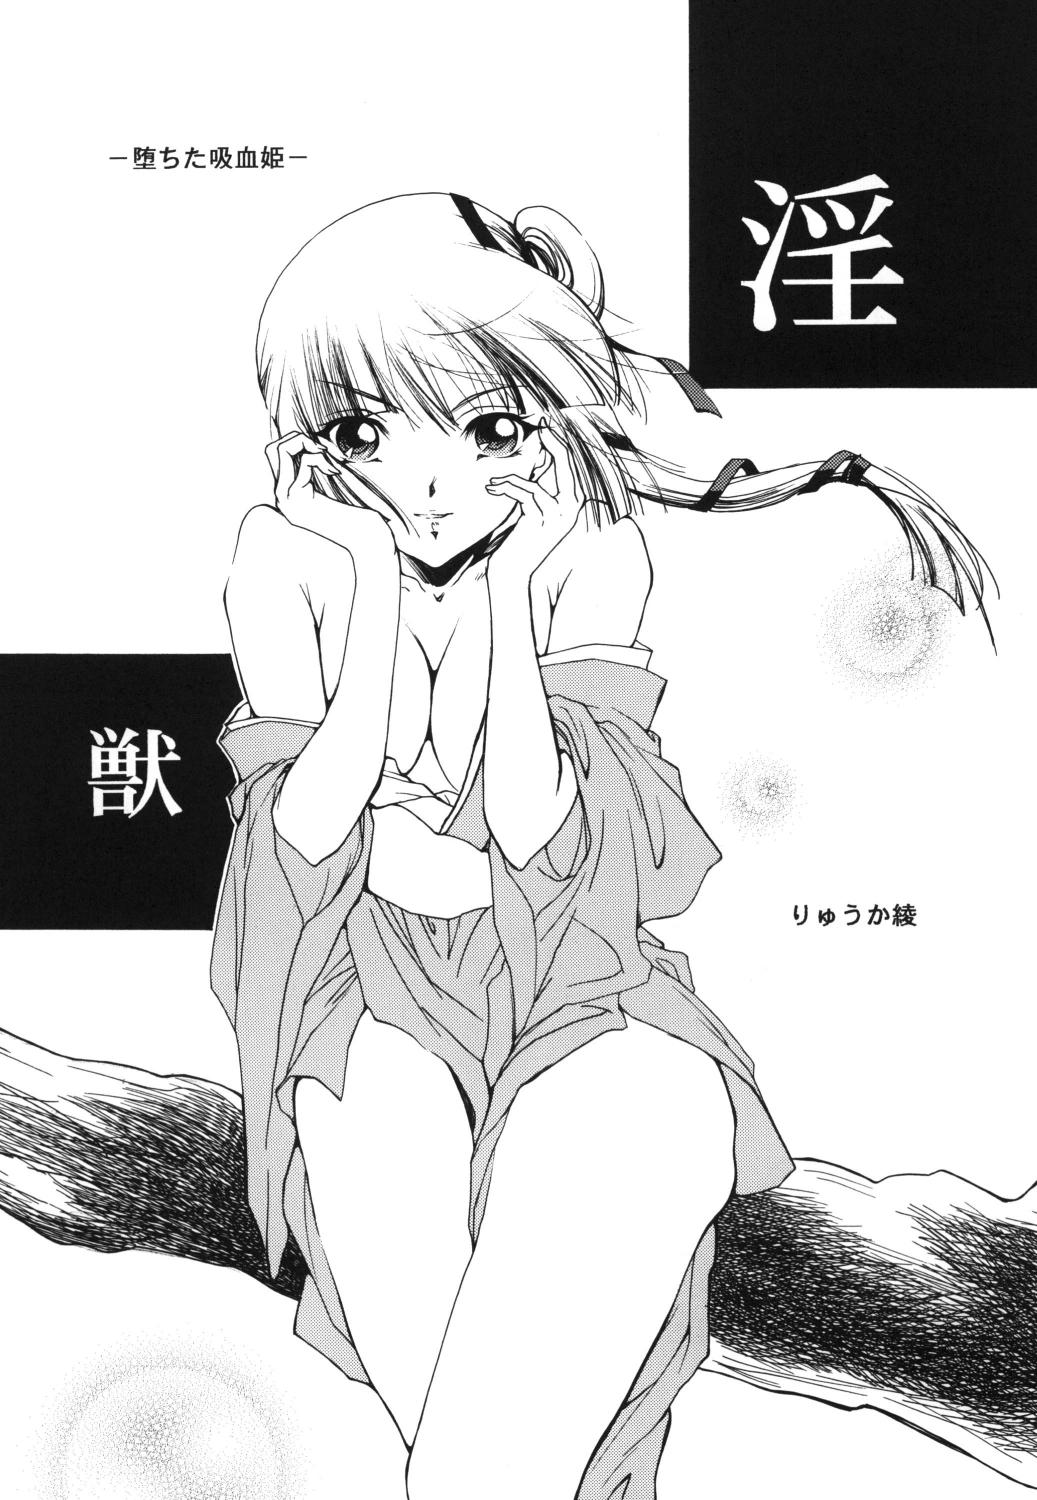 Outside Injuu - Vampire princess miyu Rubia - Page 3